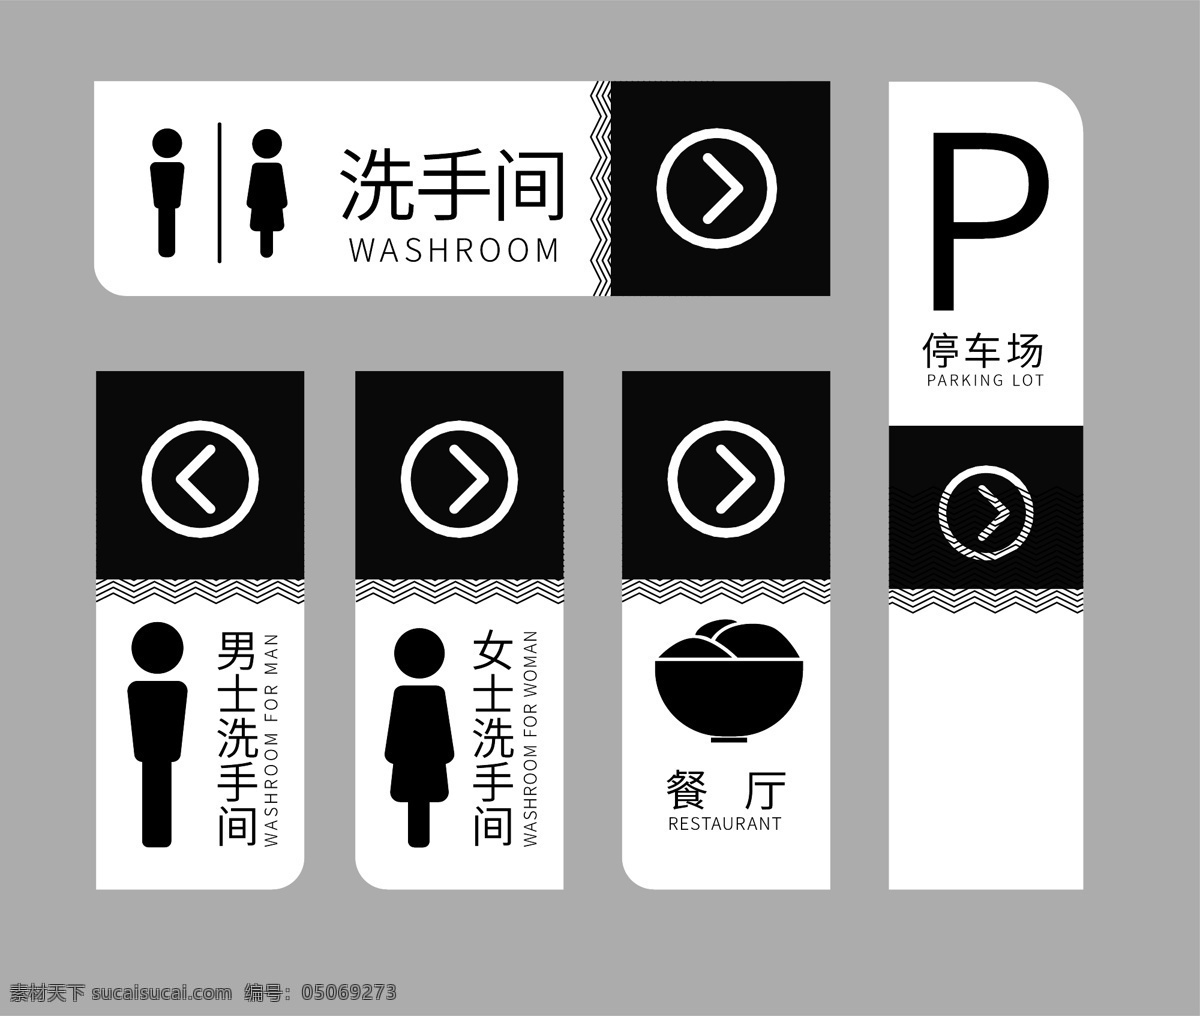 女洗手间 男洗手间 左右导视牌 洗手间 停车场 标识牌 导视牌